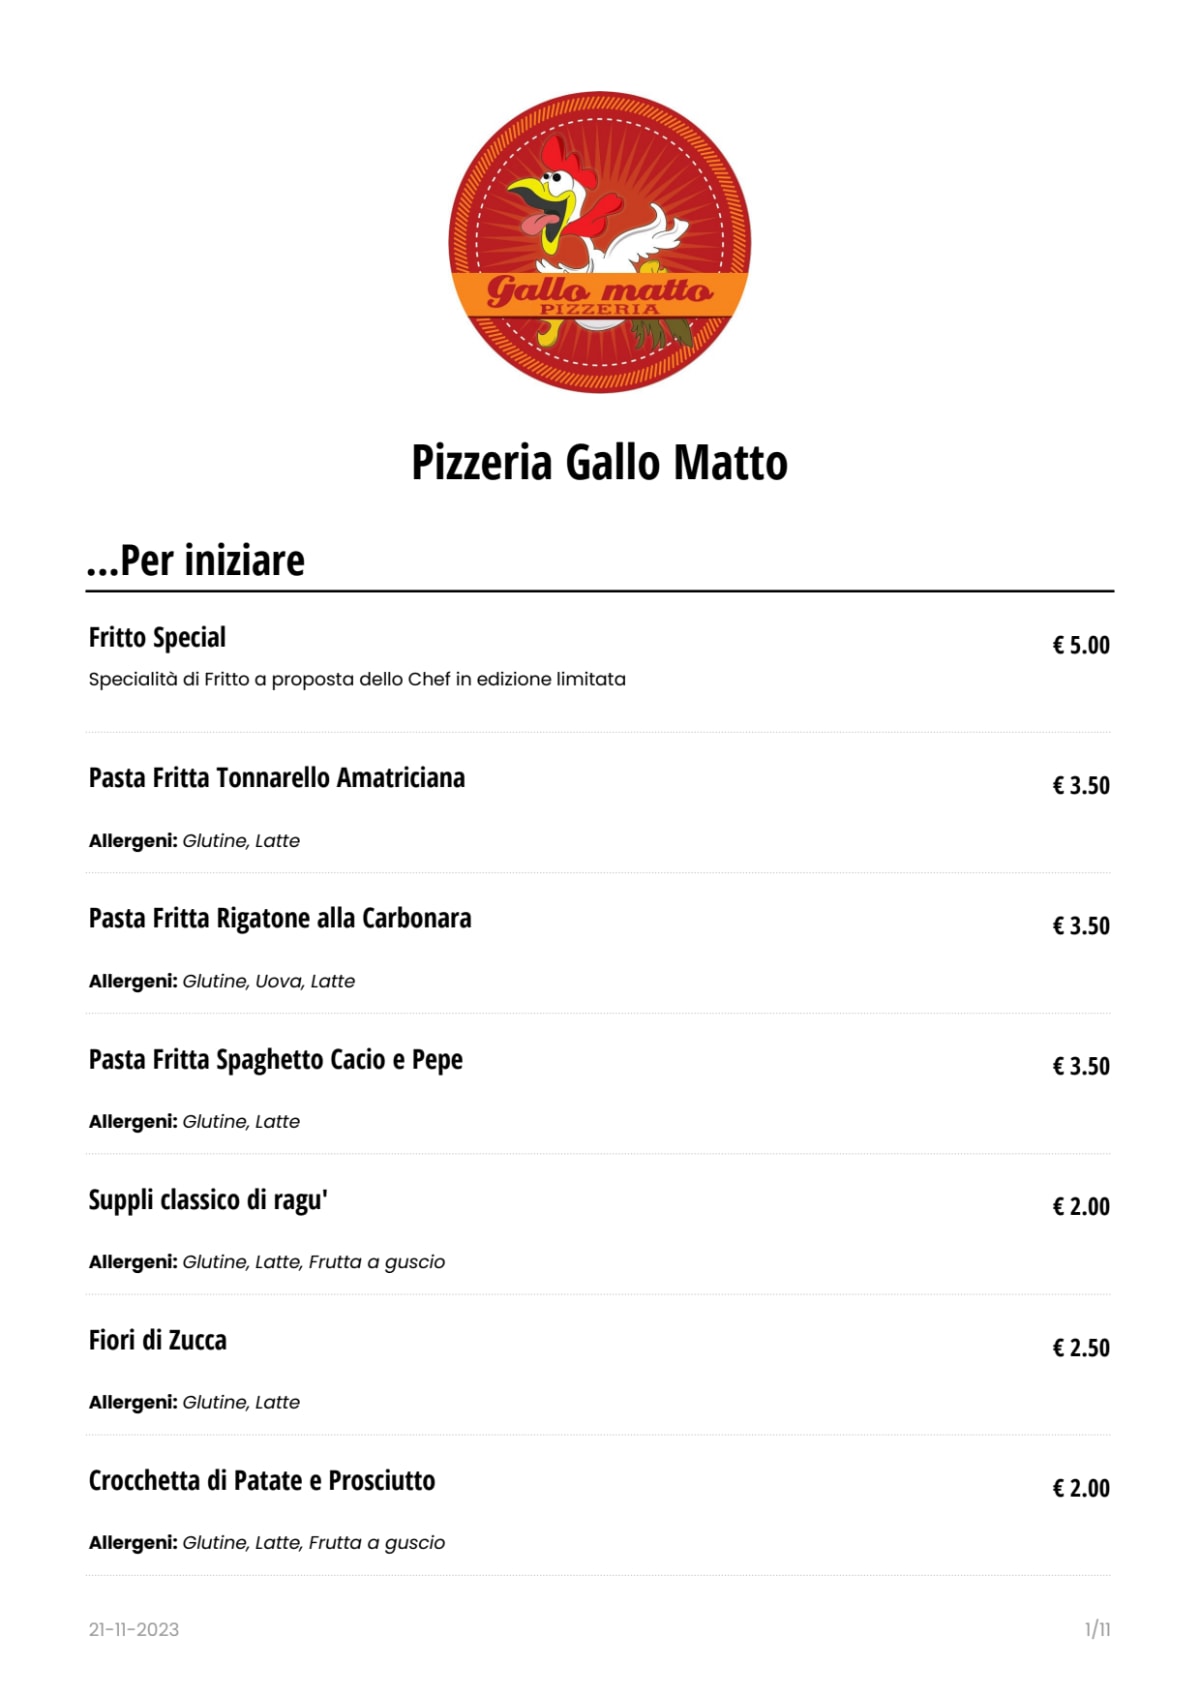 Pizzeria Gallo Matto menu